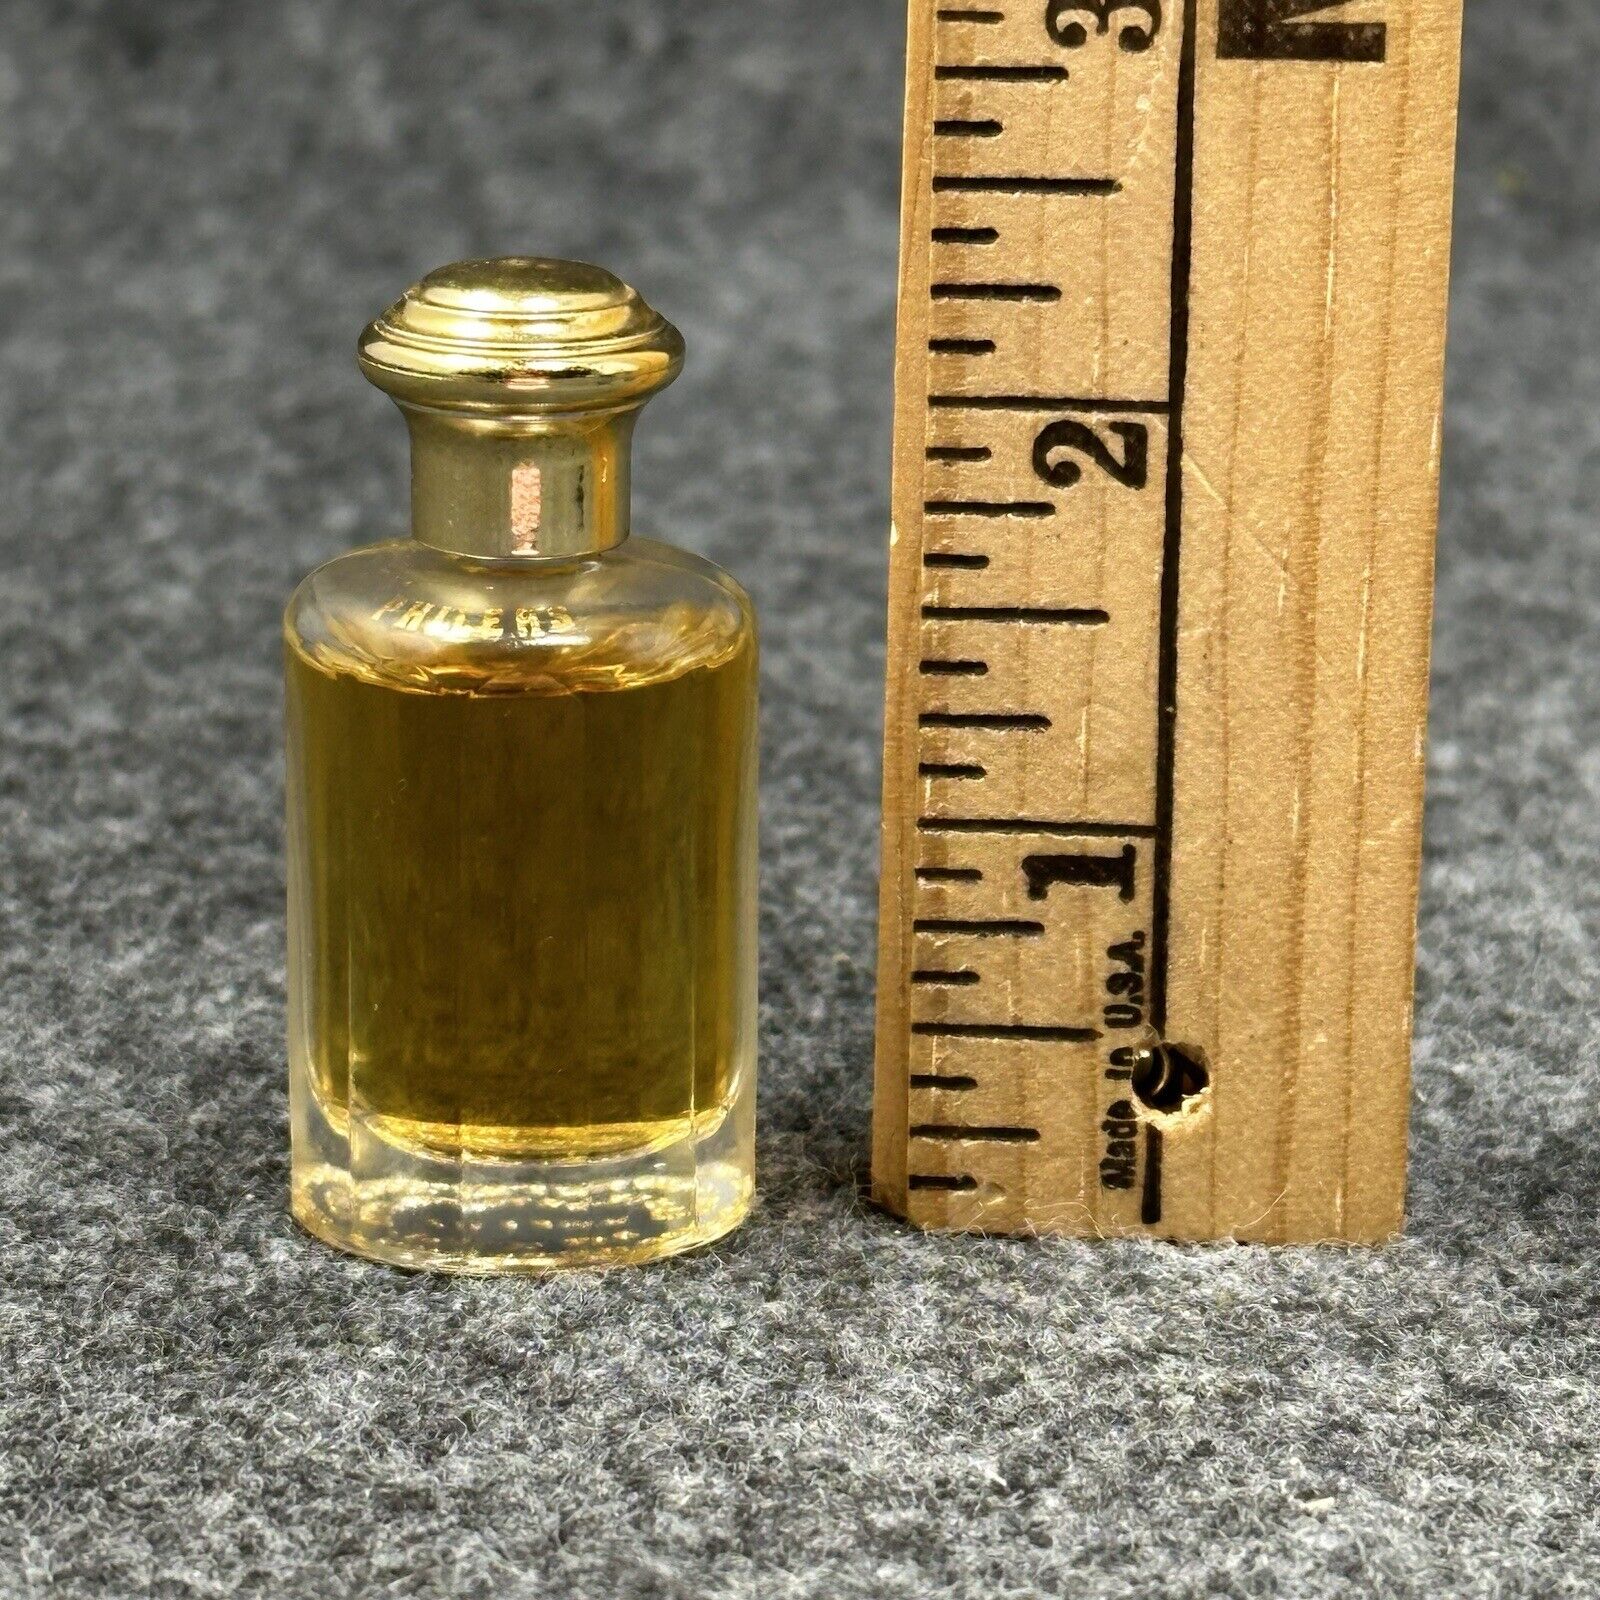 Nina Ricci Phileas Vintage Perfume Bottle Sample Mini Vanity Decor Gold Top